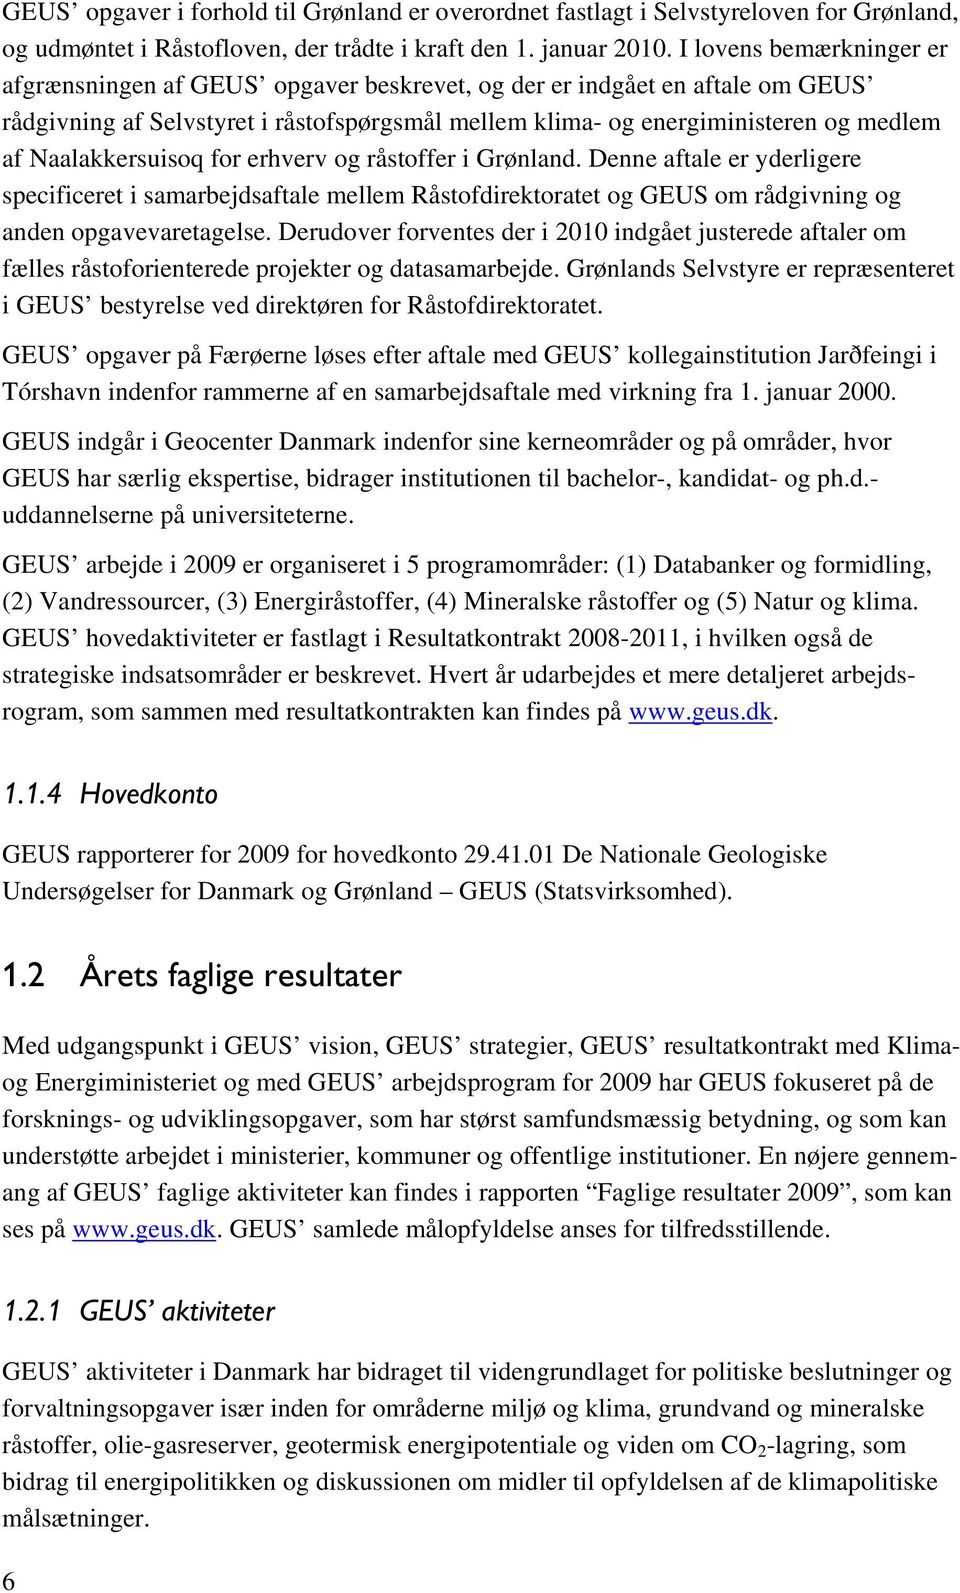 Naalakkersuisoq for erhverv og råstoffer i Grønland. Denne aftale er yderligere specificeret i samarbejdsaftale mellem Råstofdirektoratet og GEUS om rådgivning og anden opgavevaretagelse.